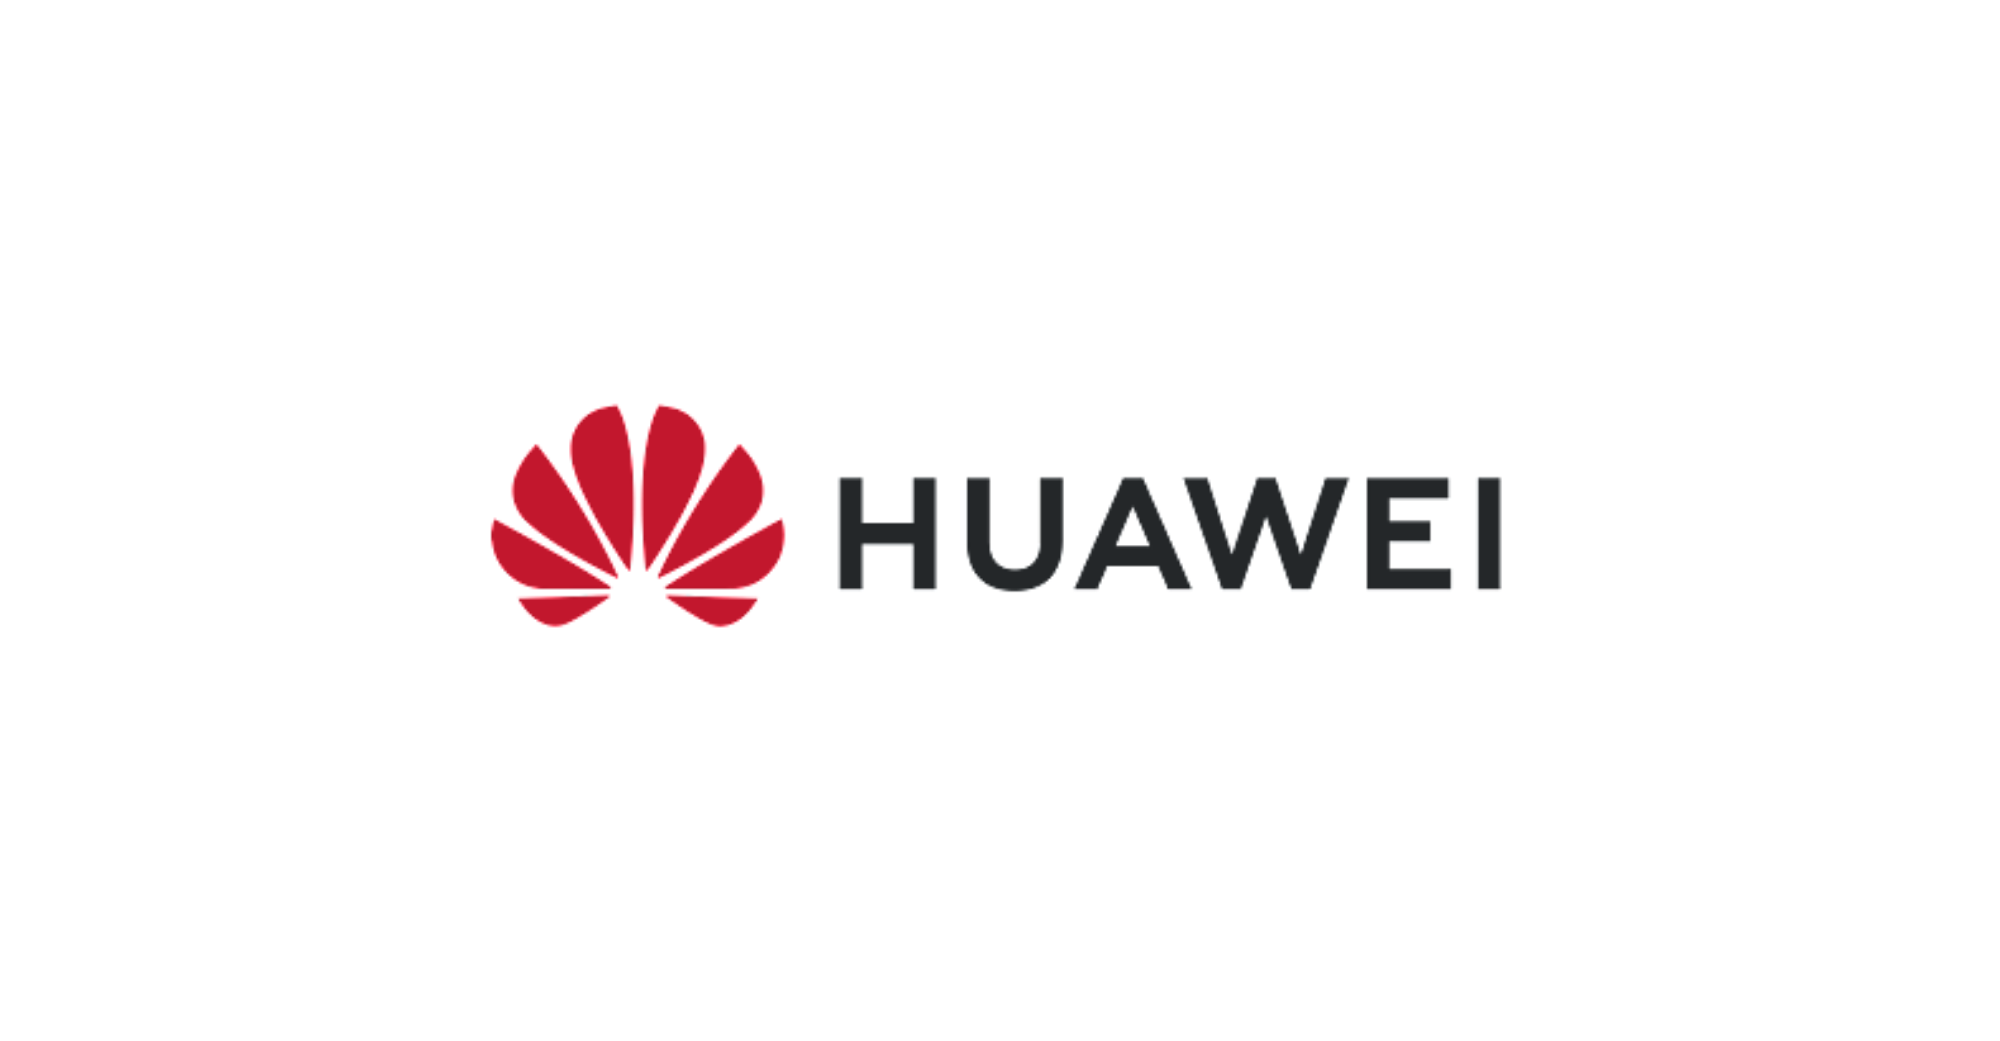 Huawei melabur dalam pembuatan peranti semikonduktor, fotoresis dan bahan semikonduktor generasi ketiga